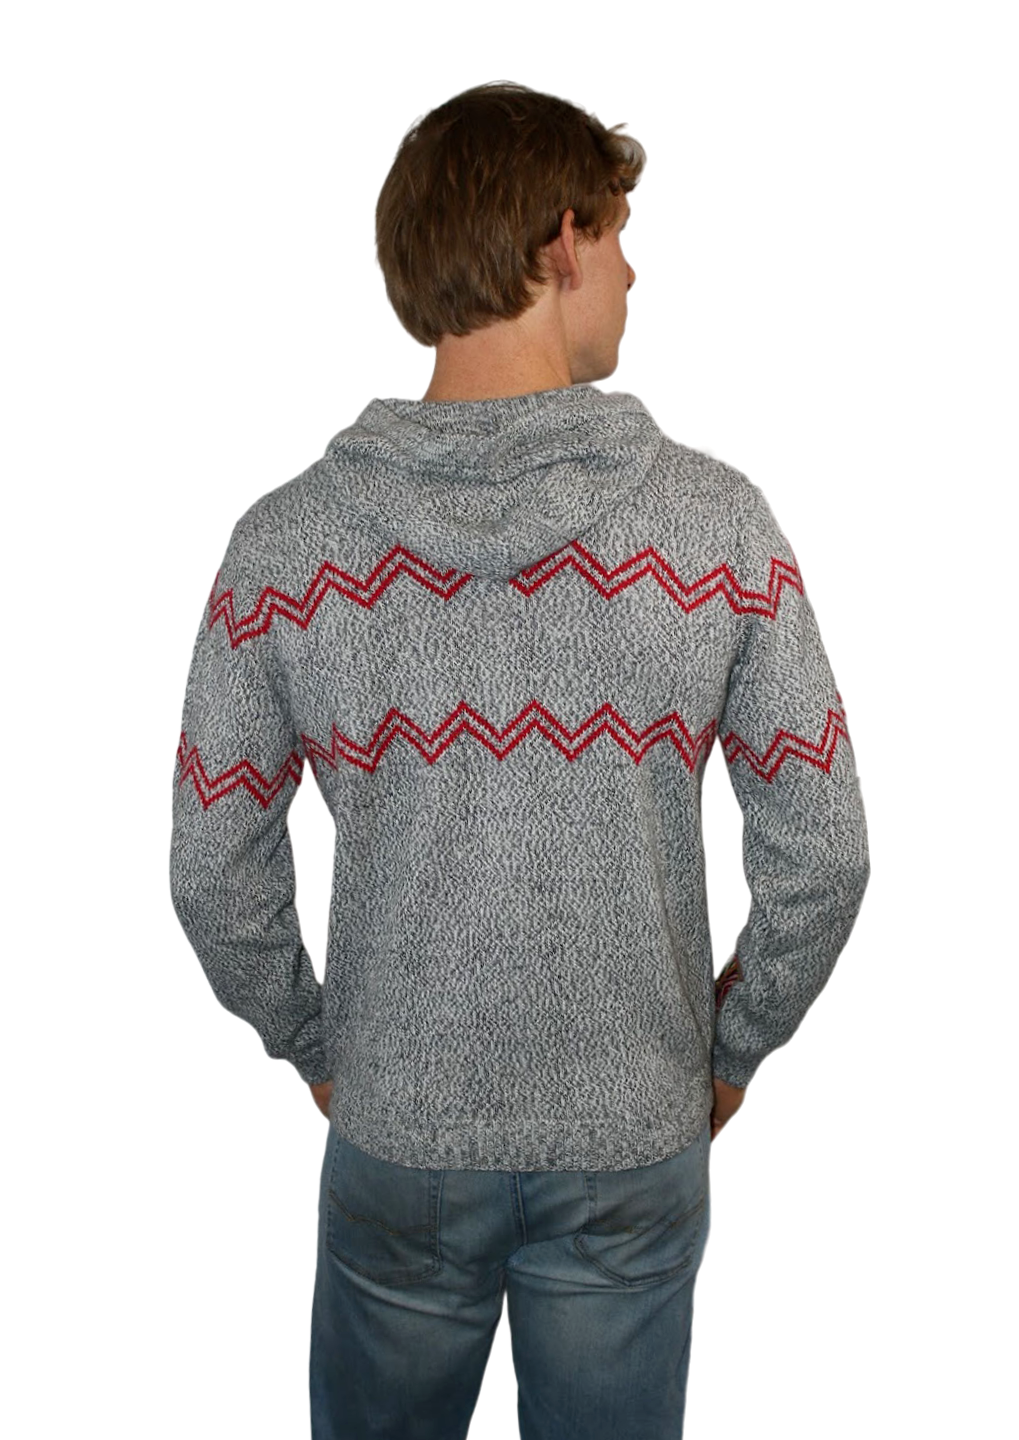 Vintage Wool Sweaters Mens United Kingdom, SAVE 45% 